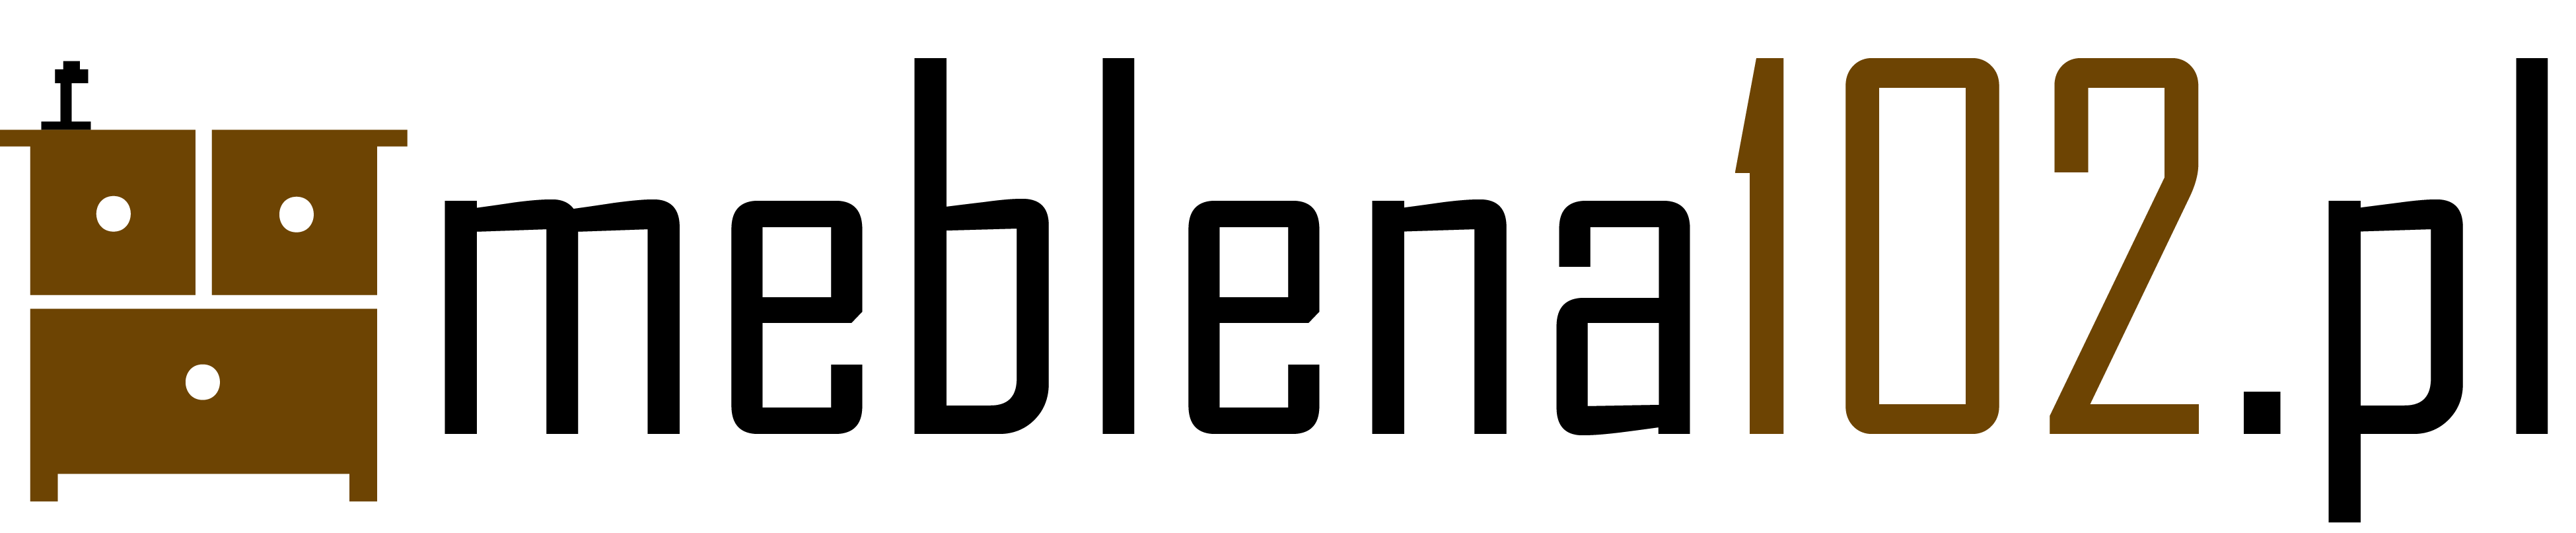 Meble na wymiar firma logo